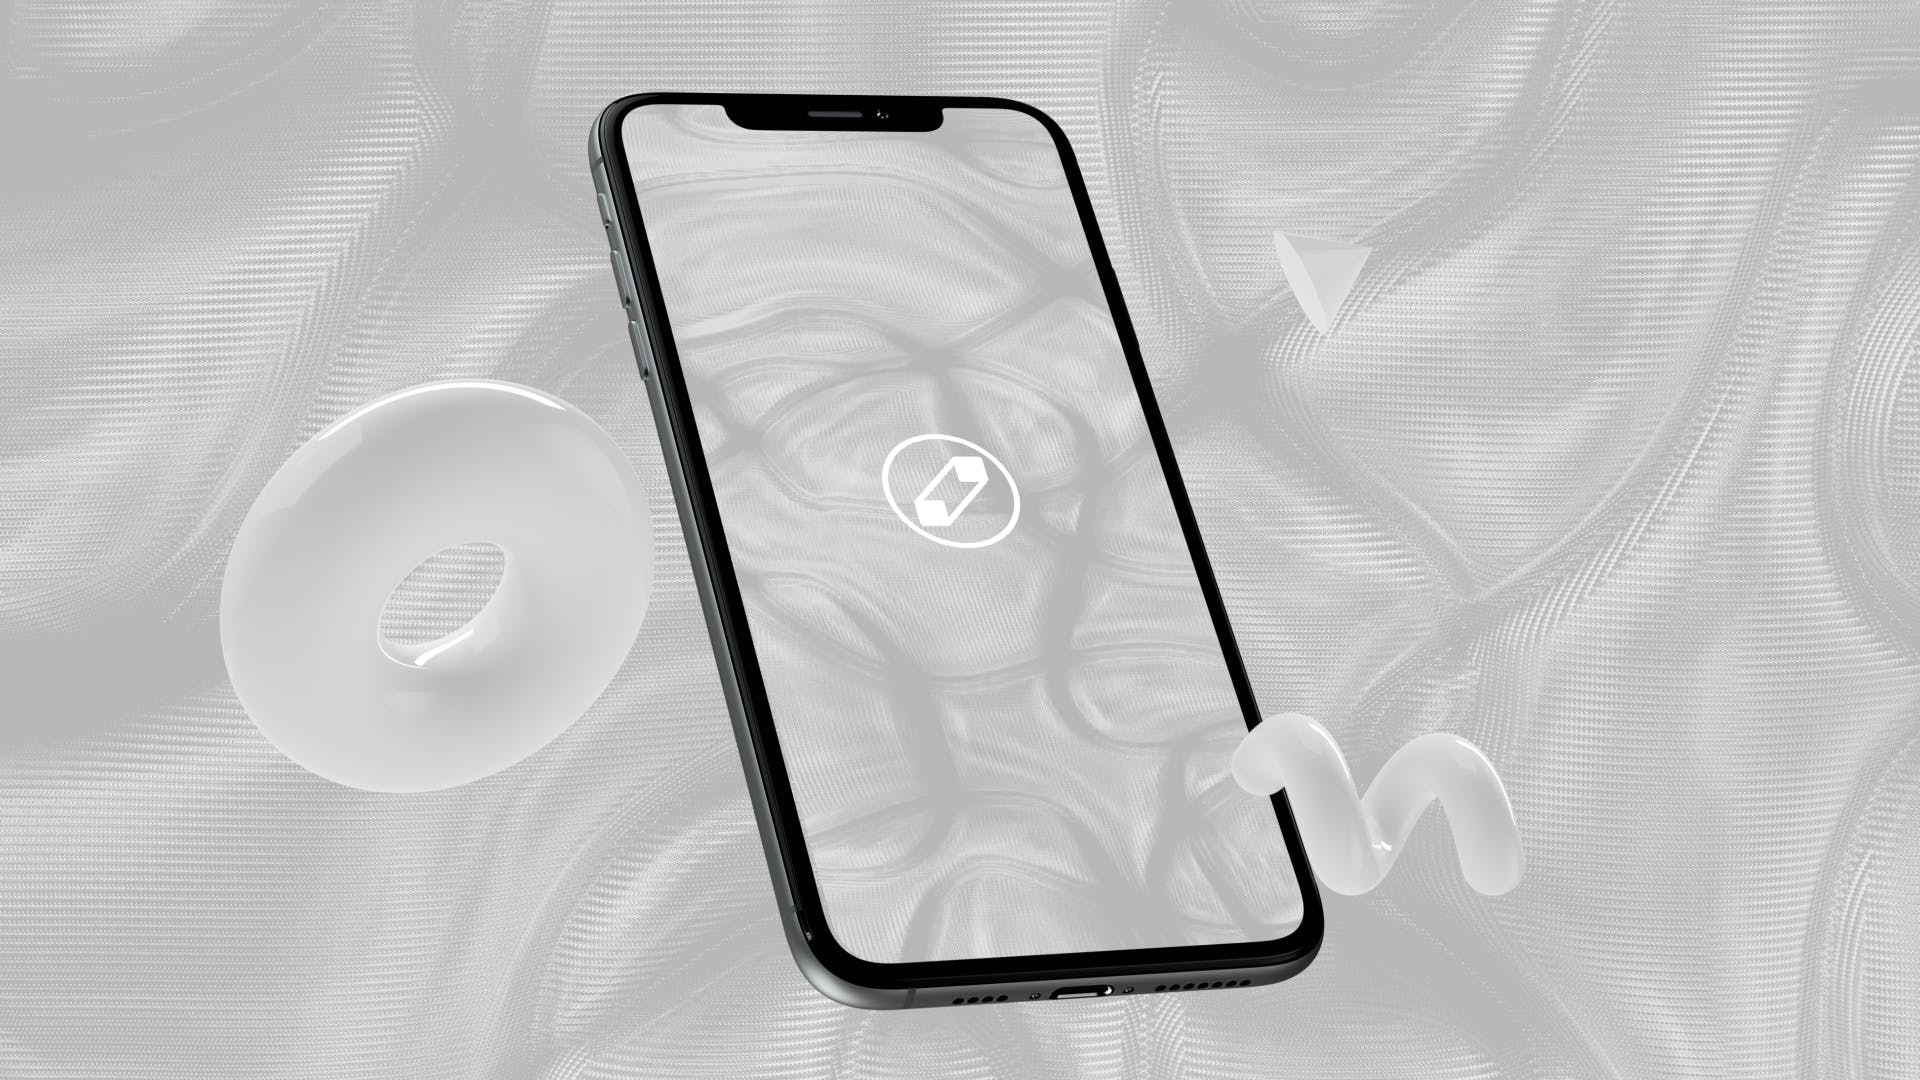 优雅时尚风格3D立体风格iPhone手机屏幕预览第一素材精选样机 10 Light Phone Mockups插图(5)